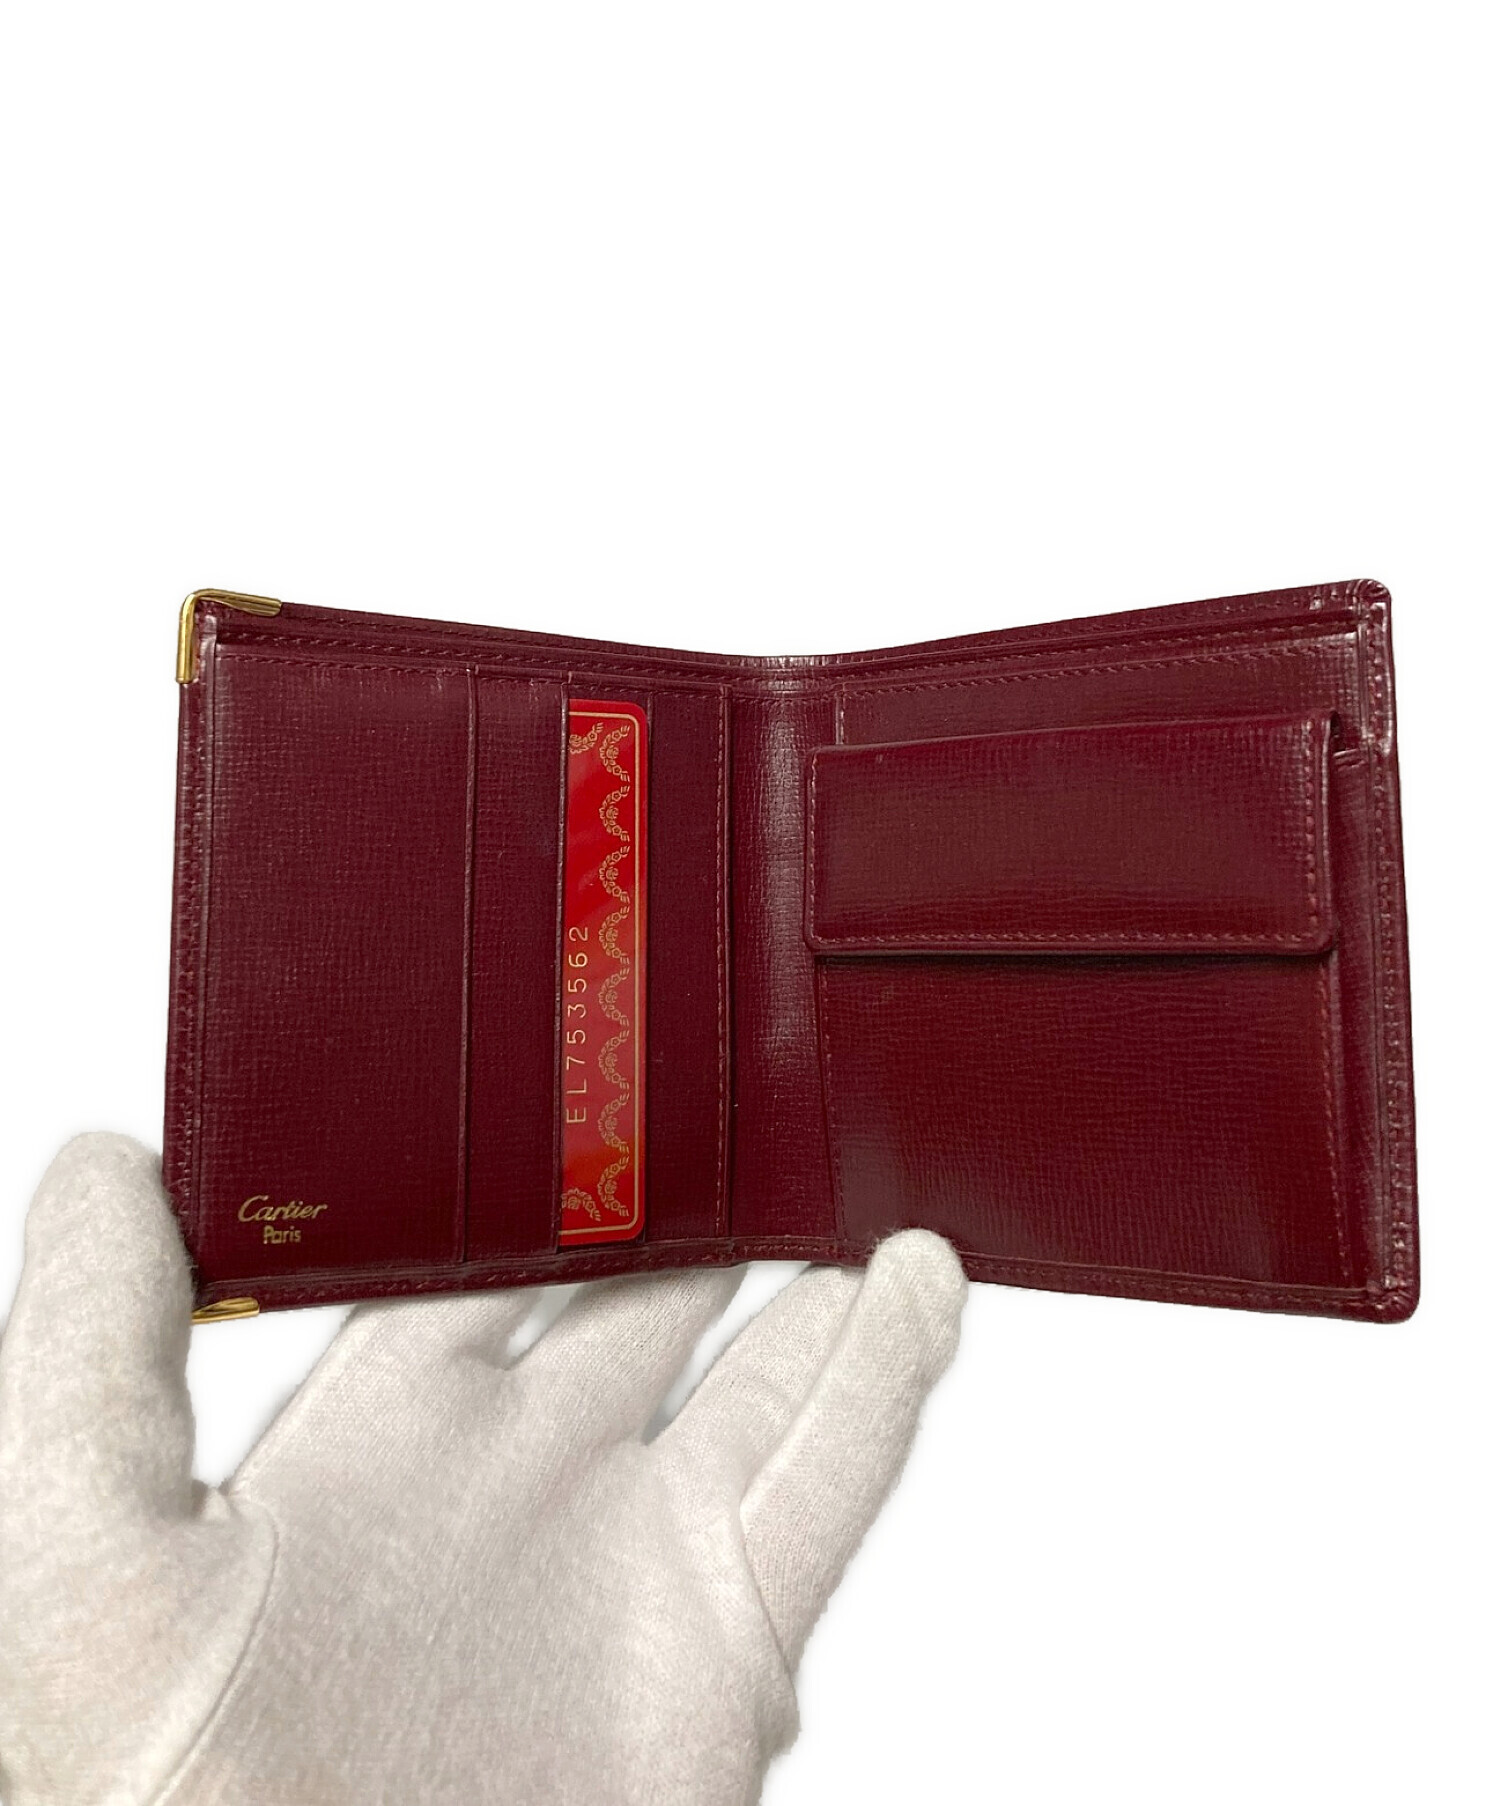 Cartier (カルティエ) マストライン レザー2つ折り財布 ワインレッド